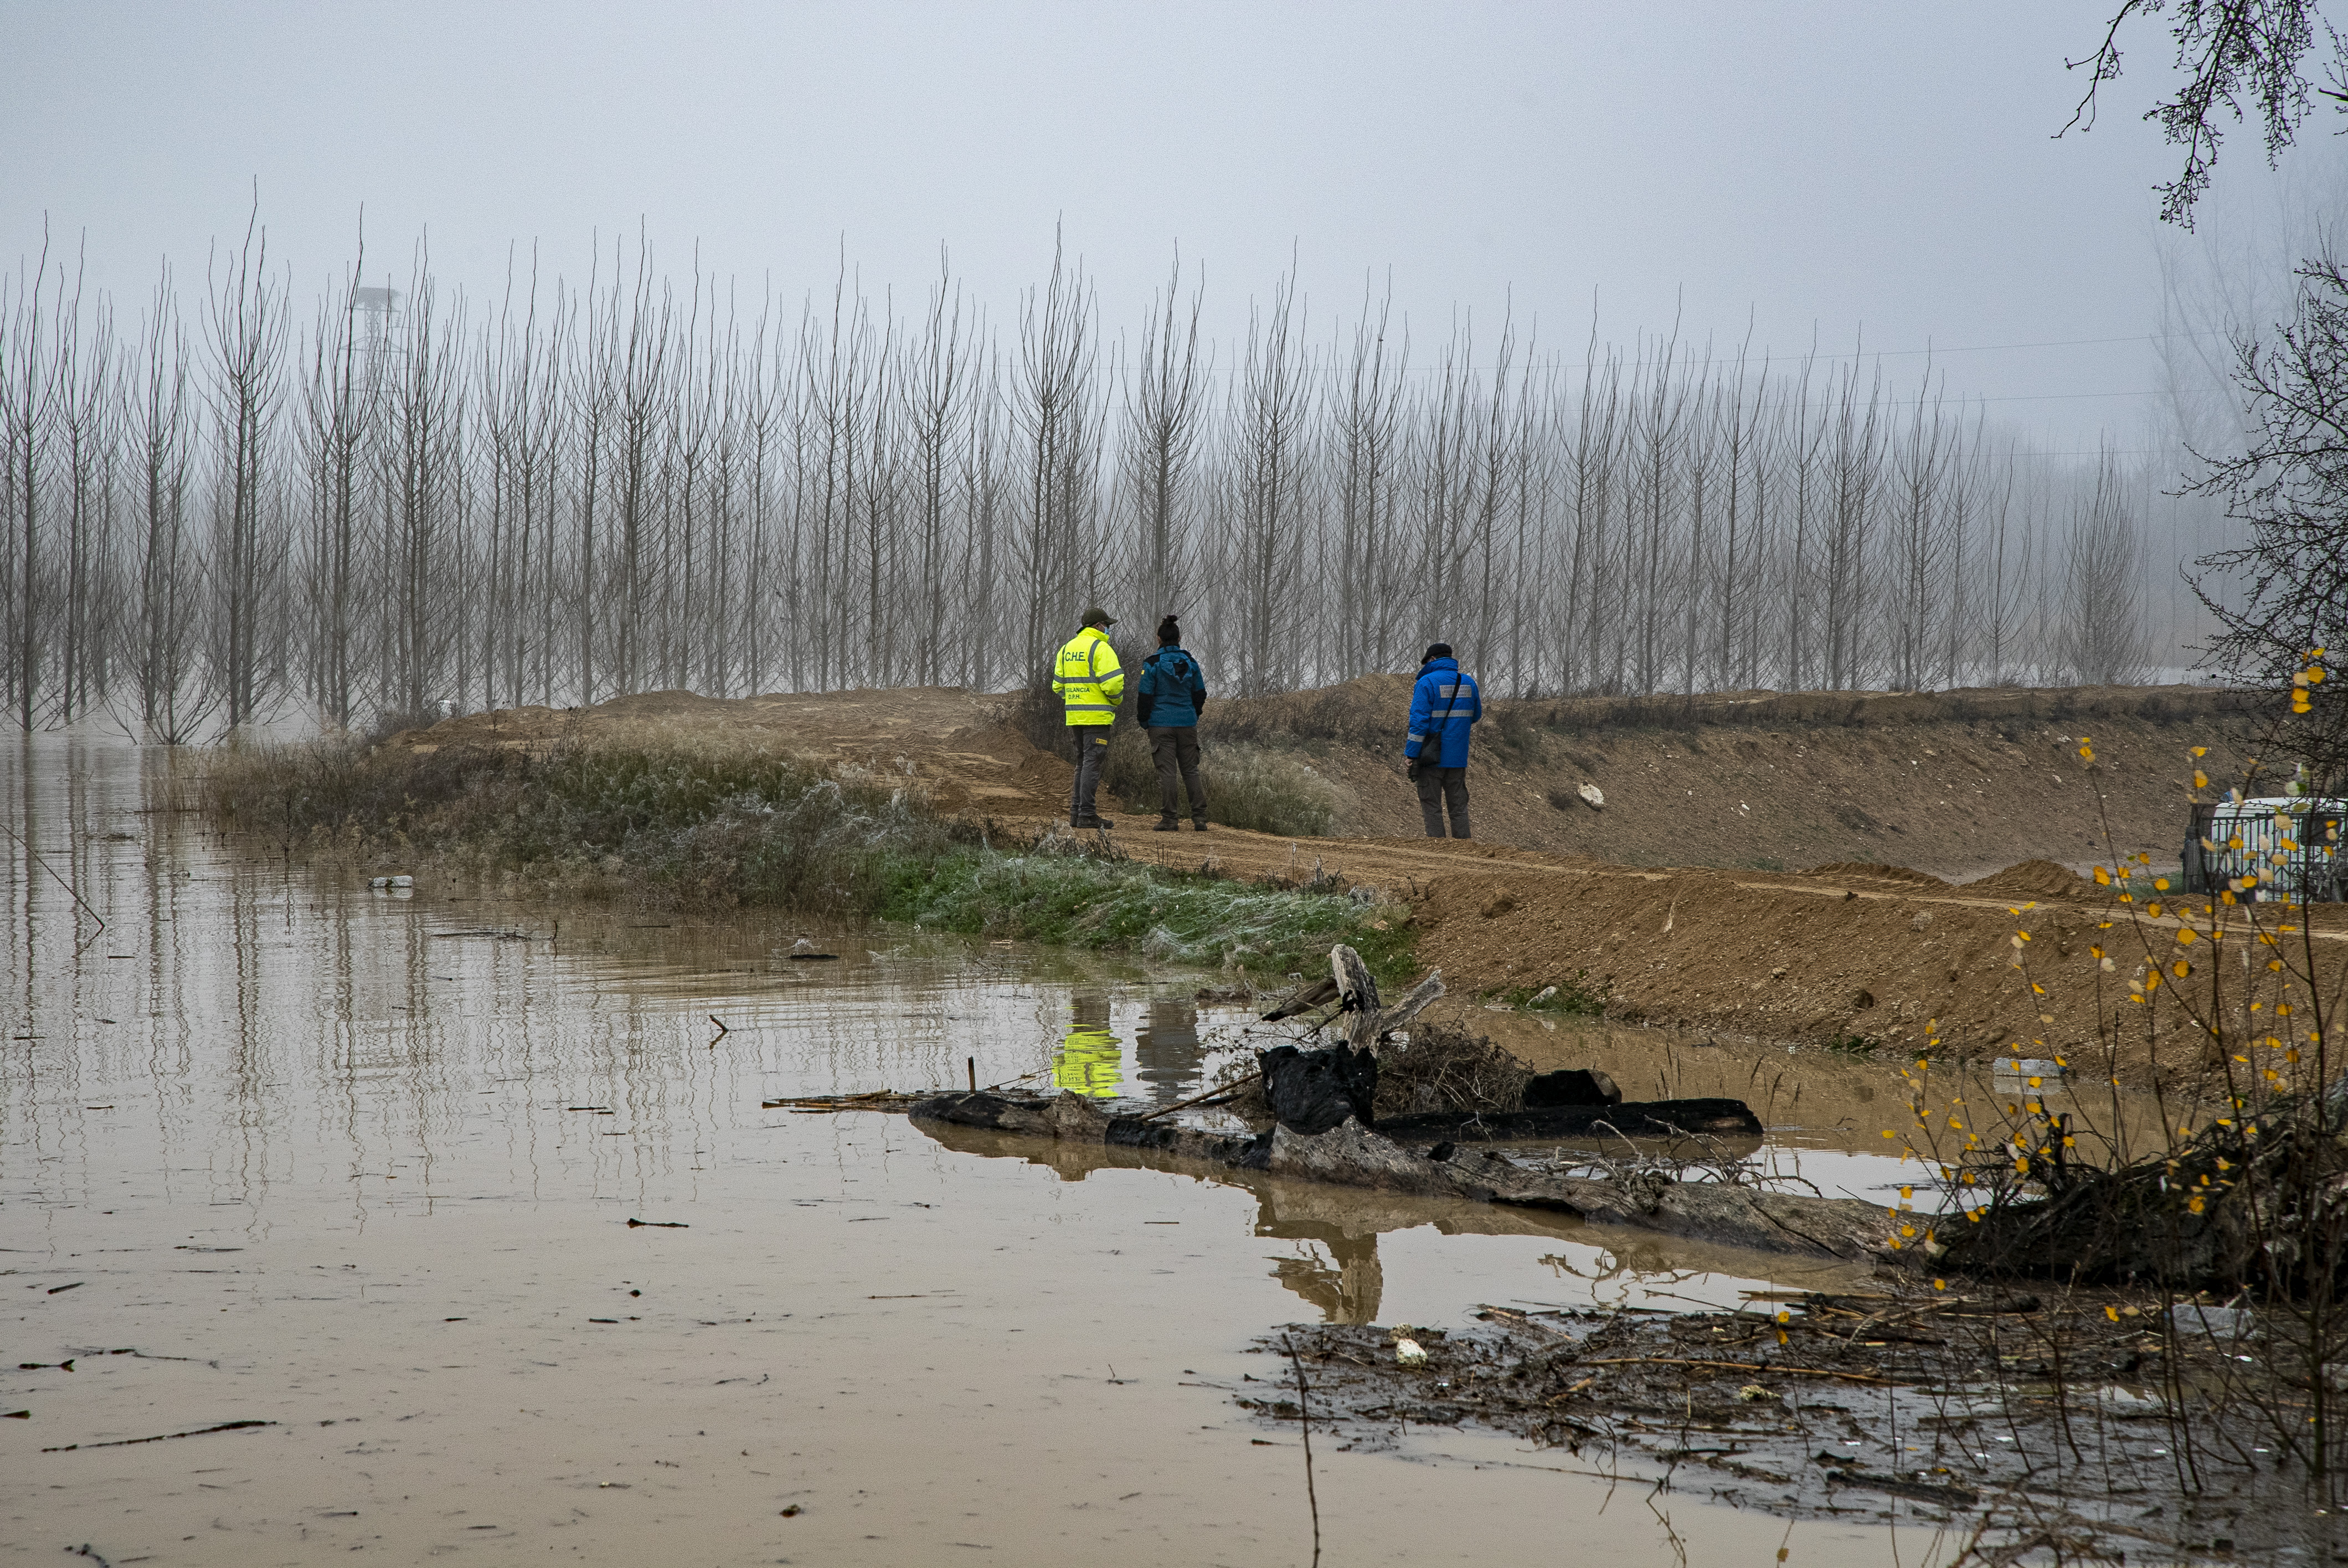 Resumen del episodio de crecida extraordinaria de diciembre 2021 en la cuenca del Ebro - Imagen 2